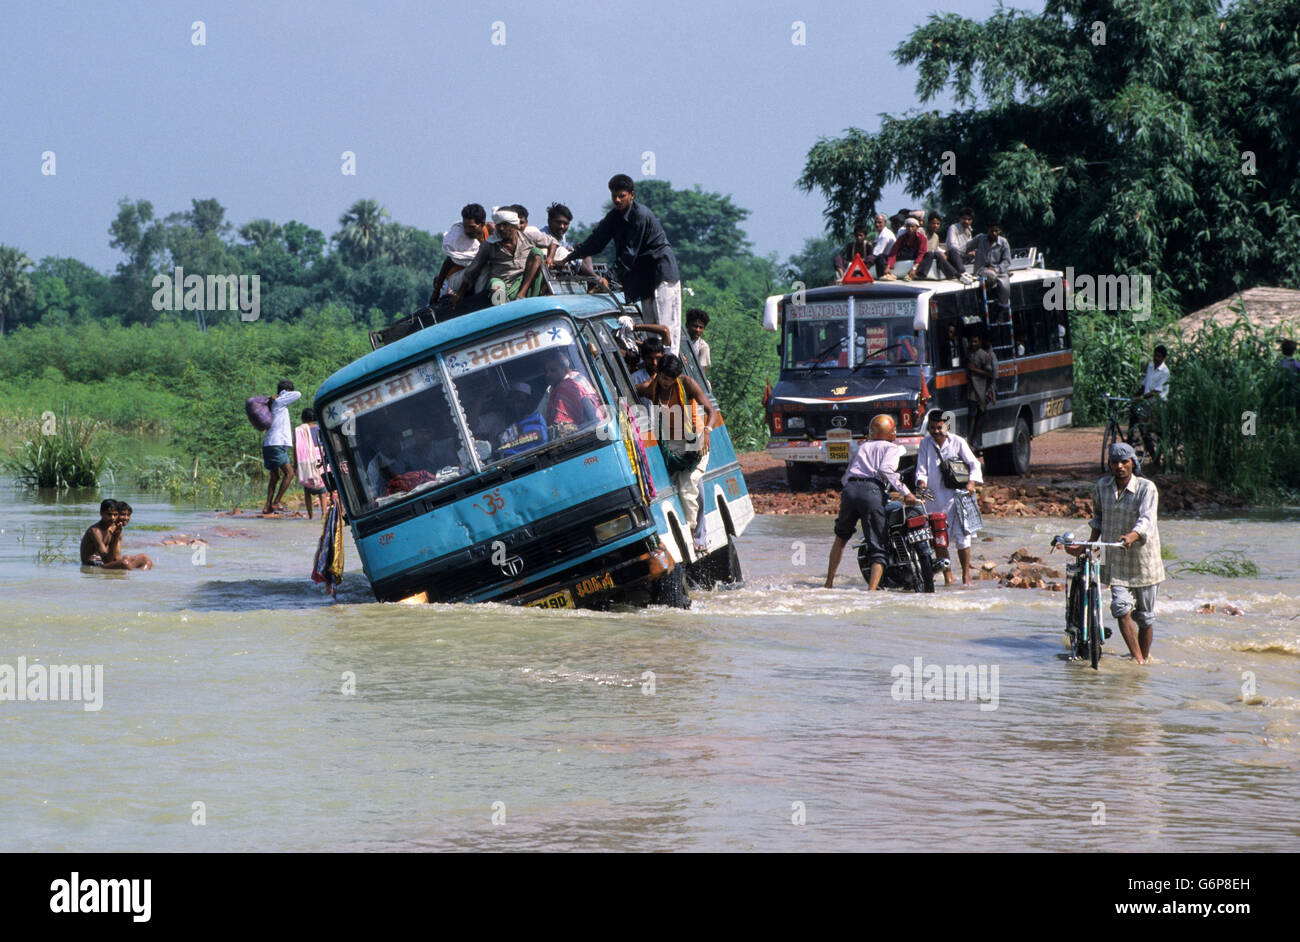 INDIA, Bihar, immersione al fiume Bagmati un ramo del Gange / Ganga River a causa delle pesanti piogge monsoniche e di fusione dei ghiacciai Himalaya, ponte rotto e danneggiato road, le persone camminare in acqua, il cambiamento climatico e il riscaldamento globale effetti Foto Stock